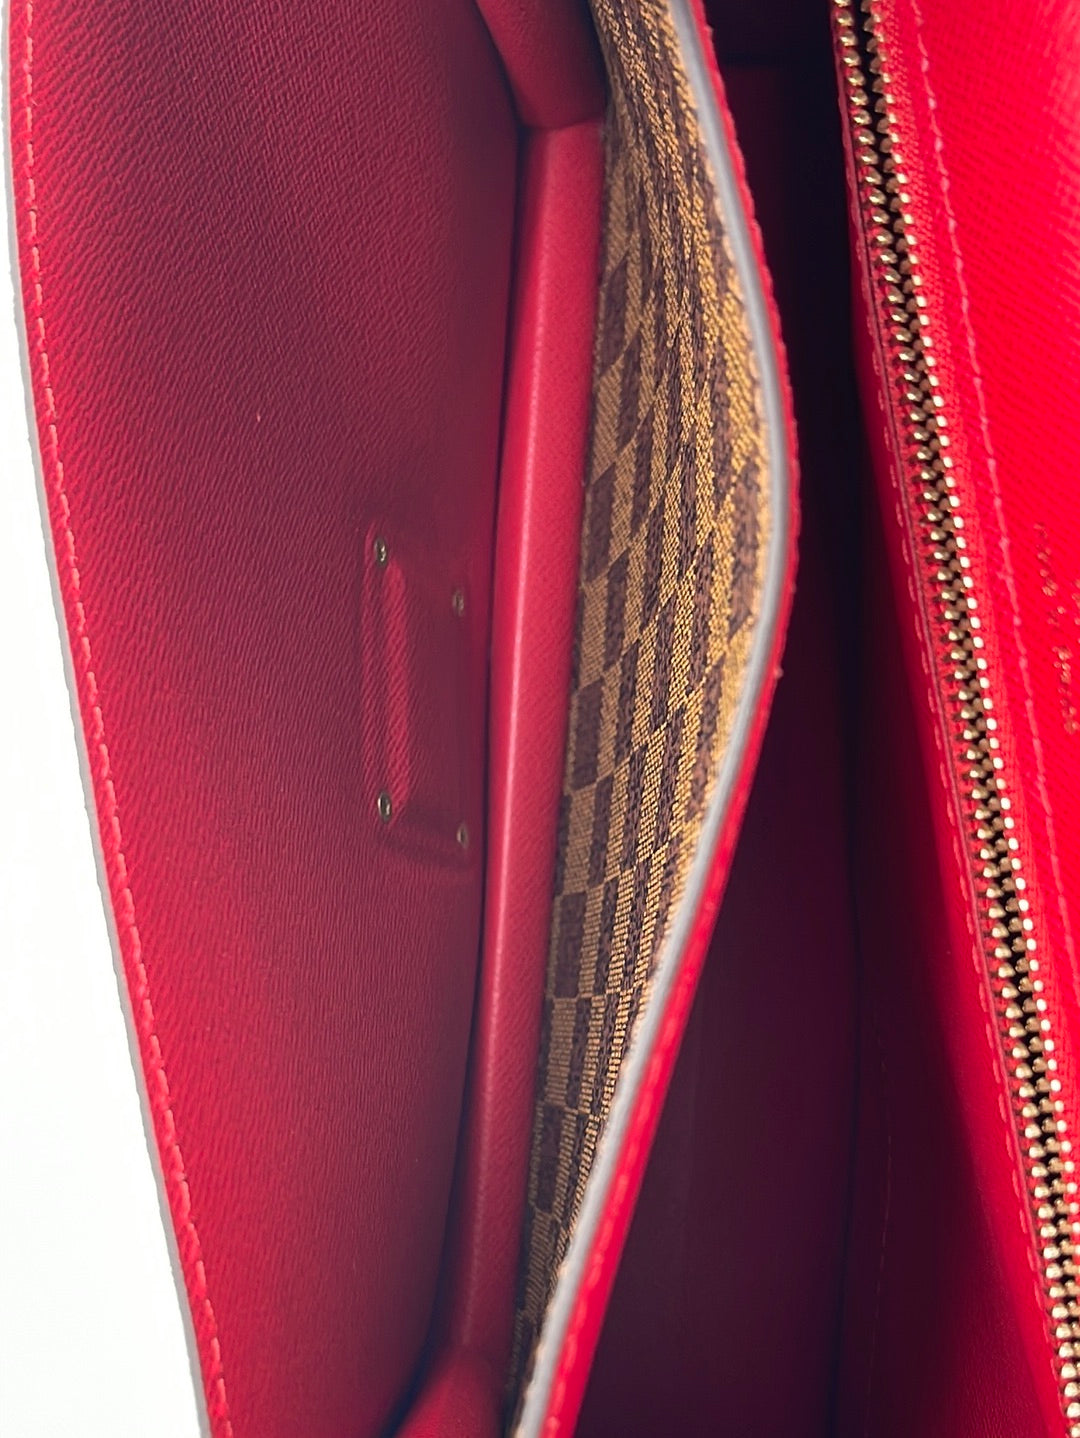 Authentic pre-owned Louis Vuitton Monceau 28 crossbody shoulder bag